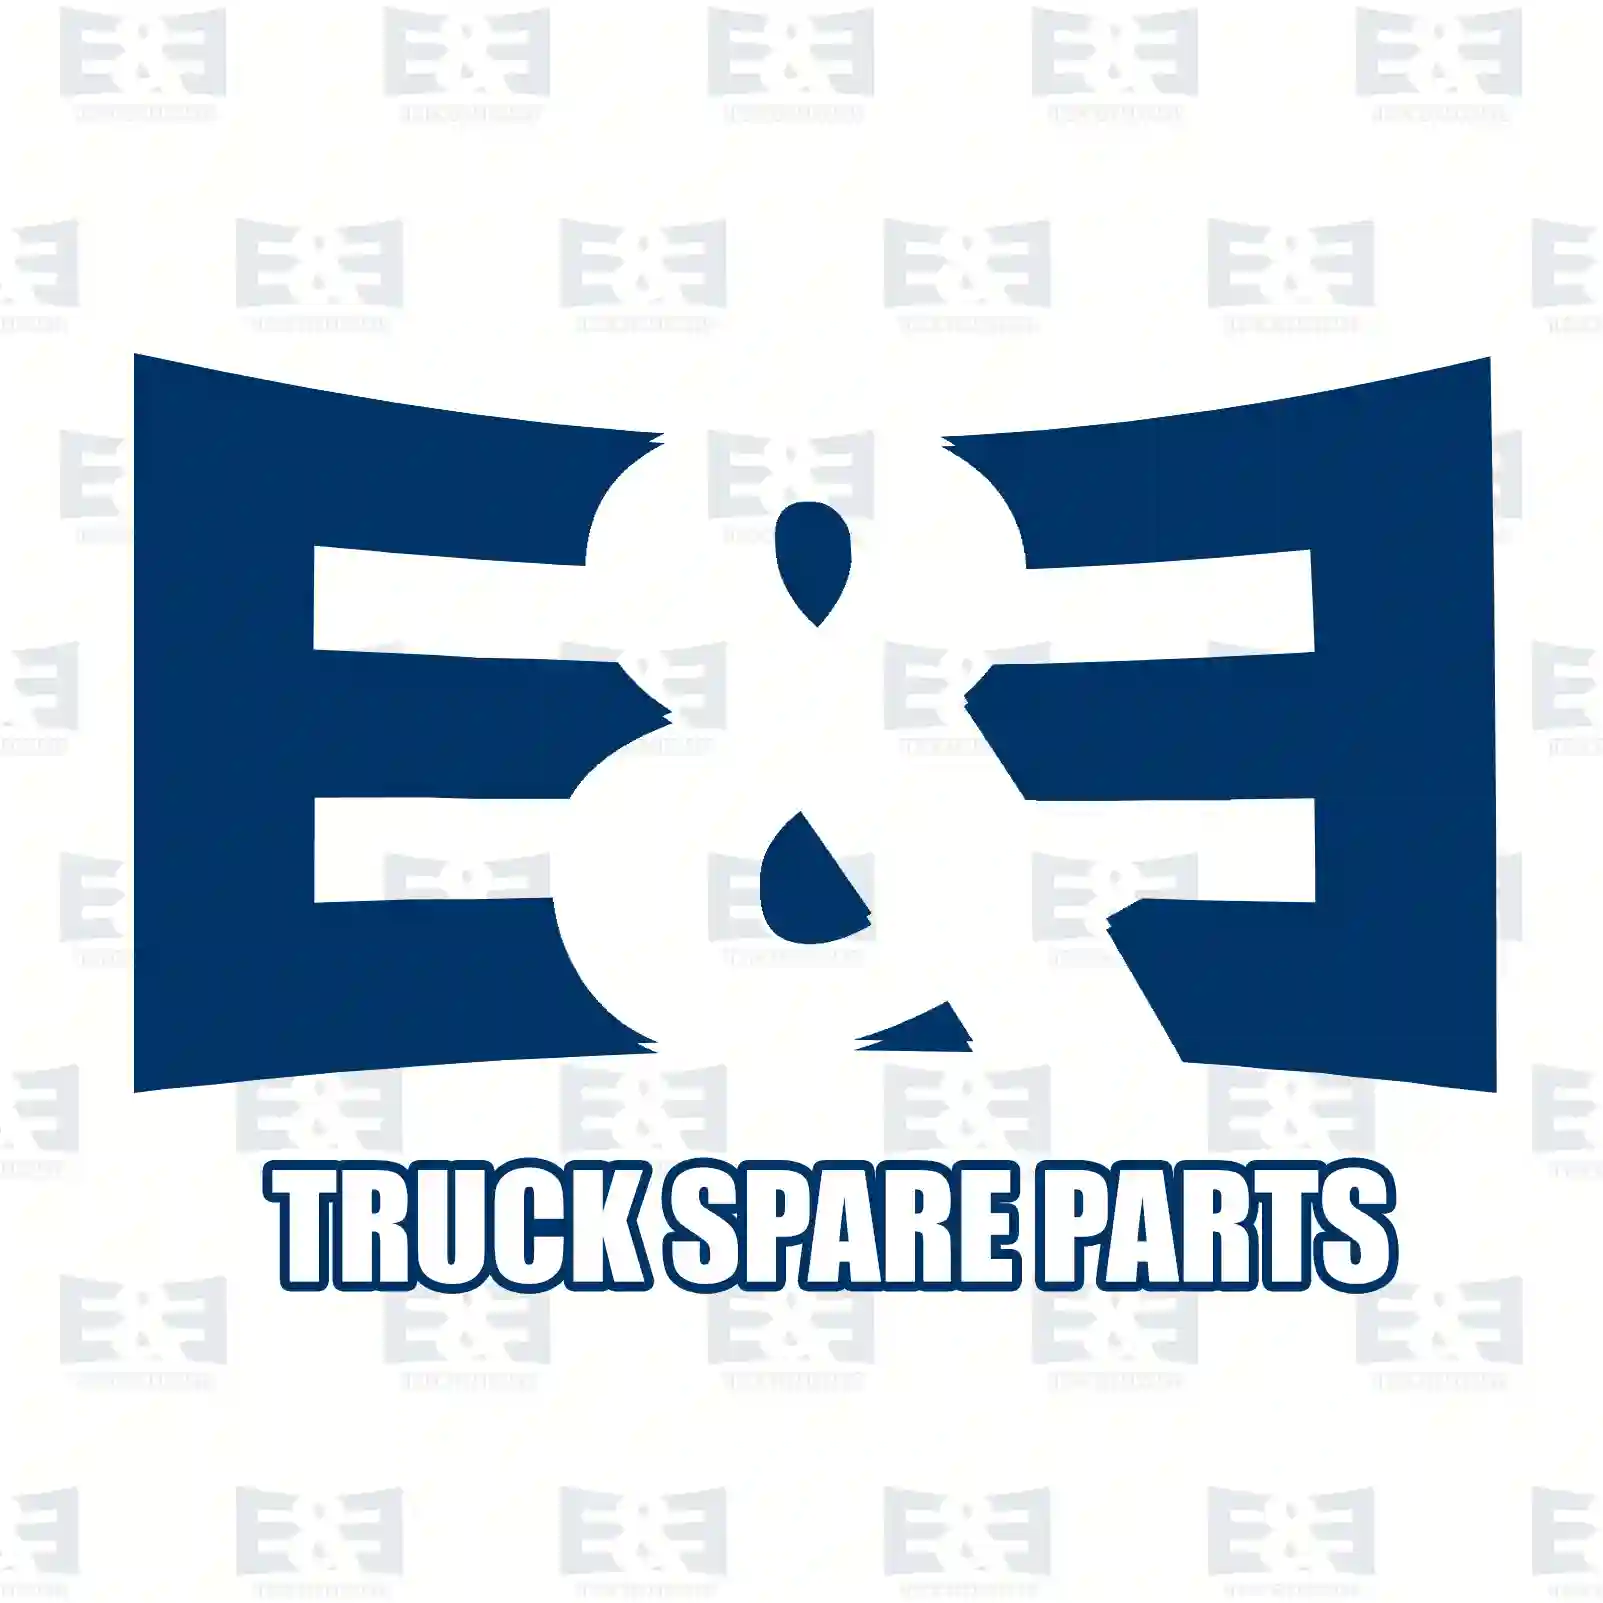 Clutch kit, 2E2288981, 81300056033, 813 ||  2E2288981 E&E Truck Spare Parts | Truck Spare Parts, Auotomotive Spare Parts Clutch kit, 2E2288981, 81300056033, 813 ||  2E2288981 E&E Truck Spare Parts | Truck Spare Parts, Auotomotive Spare Parts